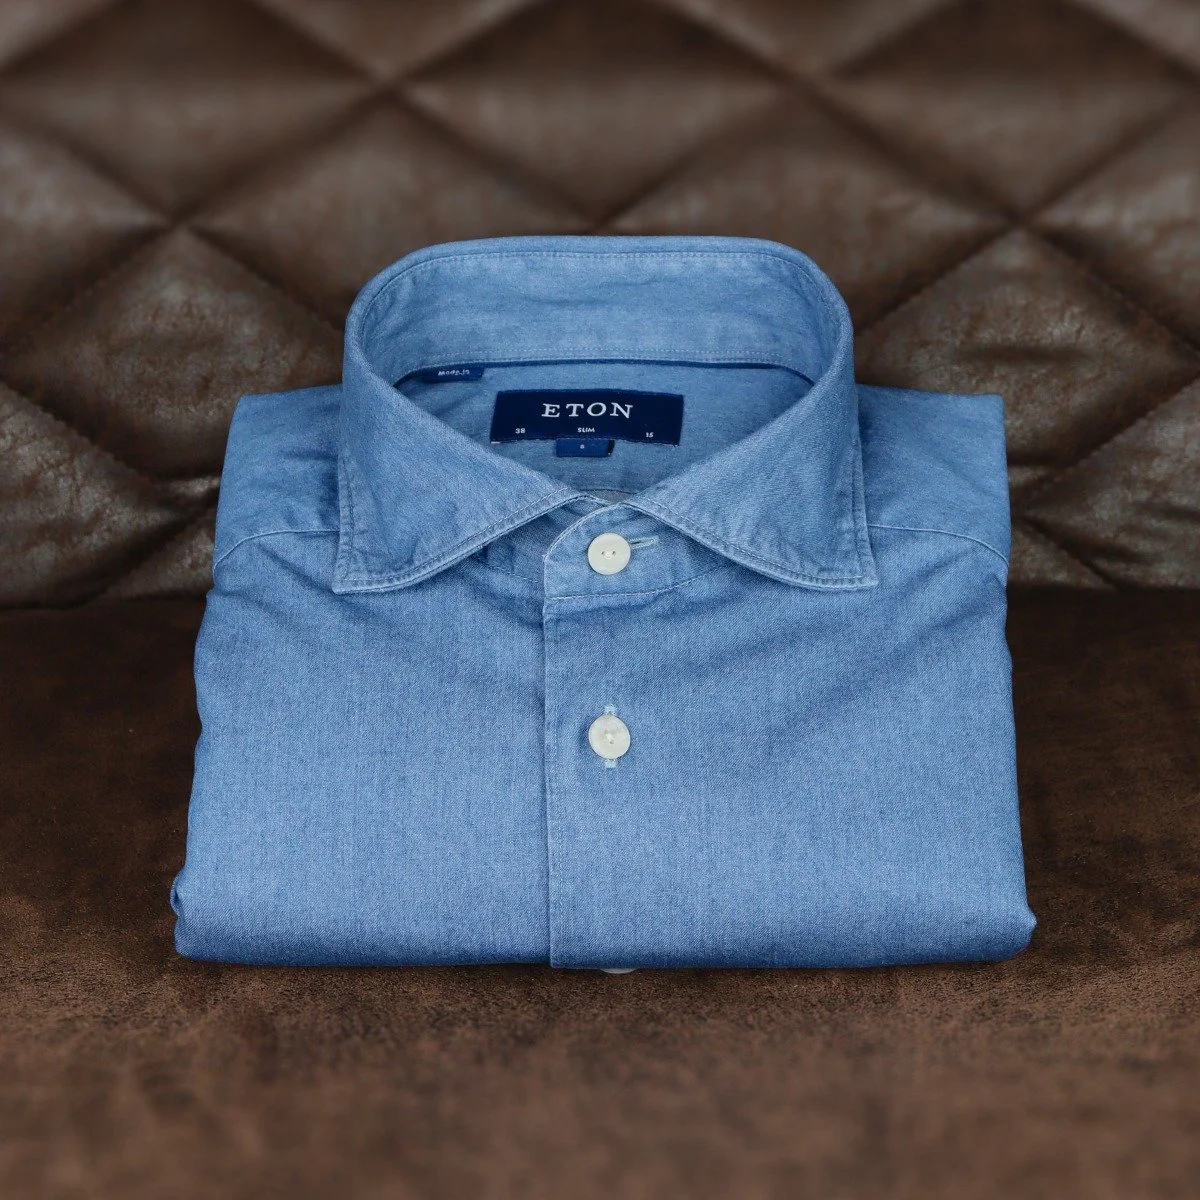 Top 5 men's dress shirts - Blue lightweight denim shirt